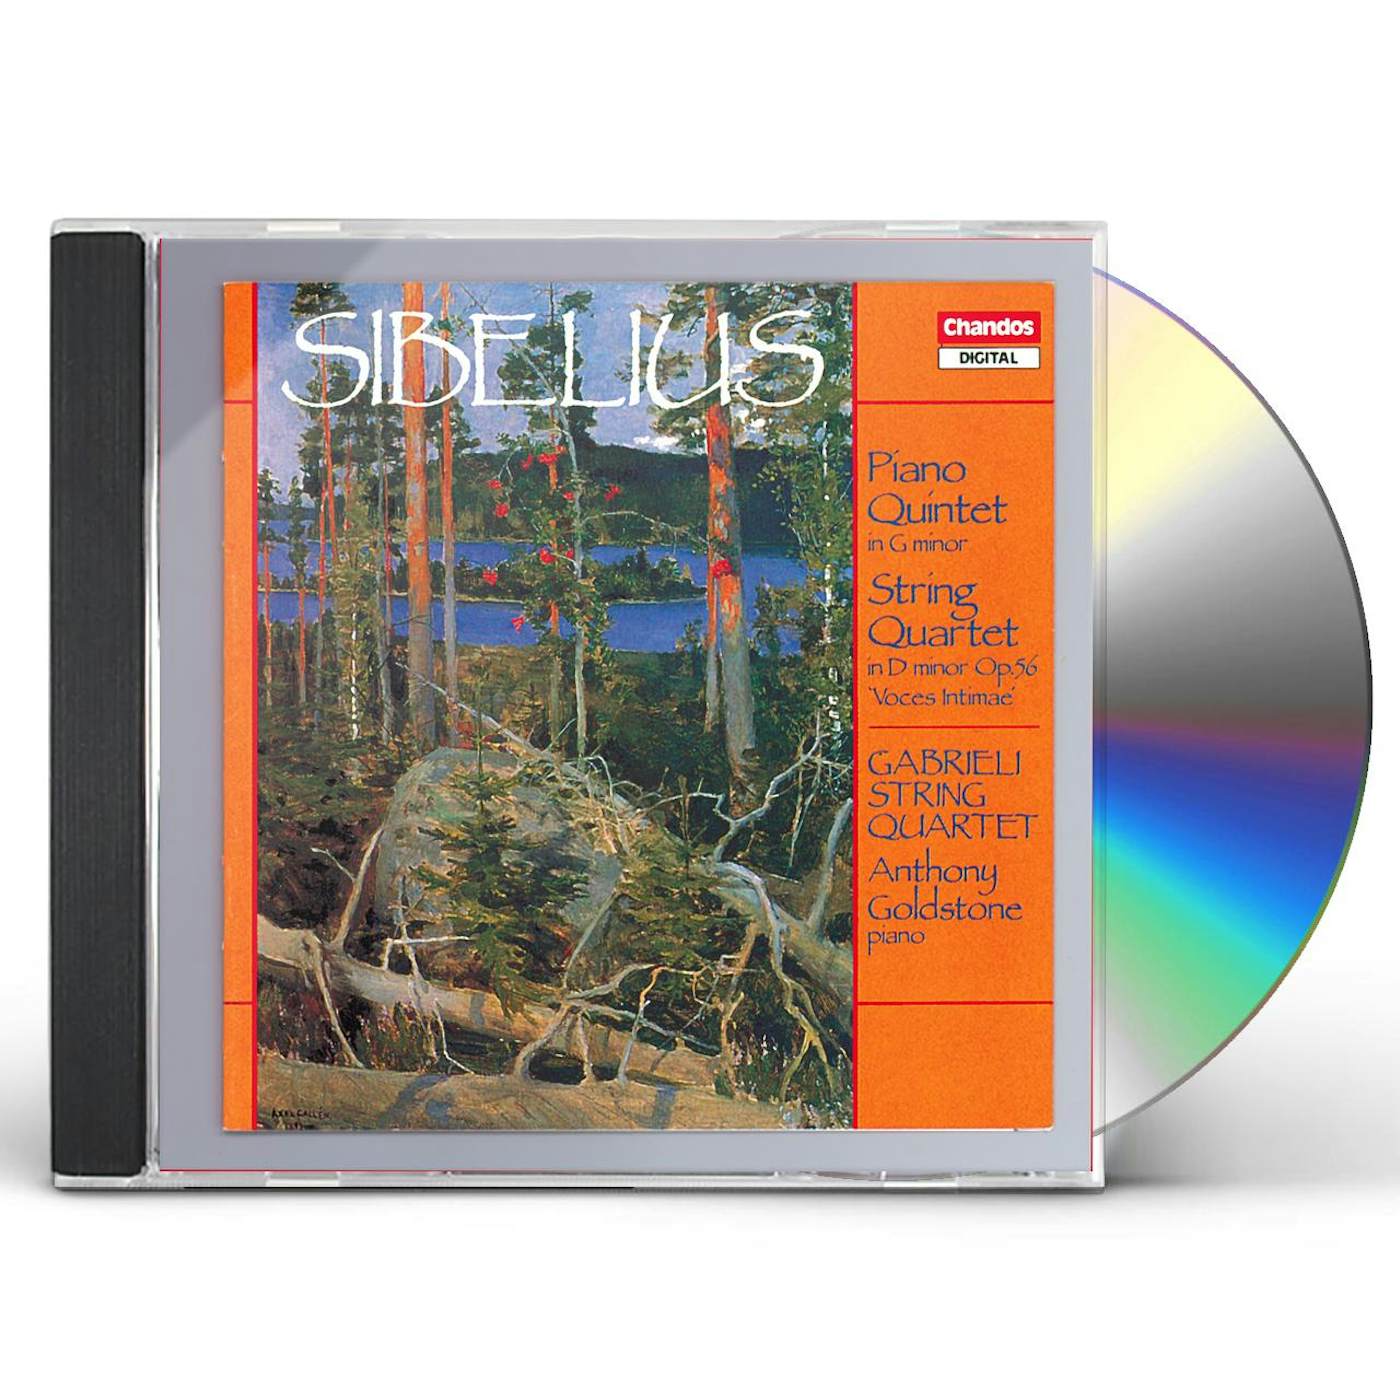 Sibelius PIANO QUINTET / STRING QUARTET CD